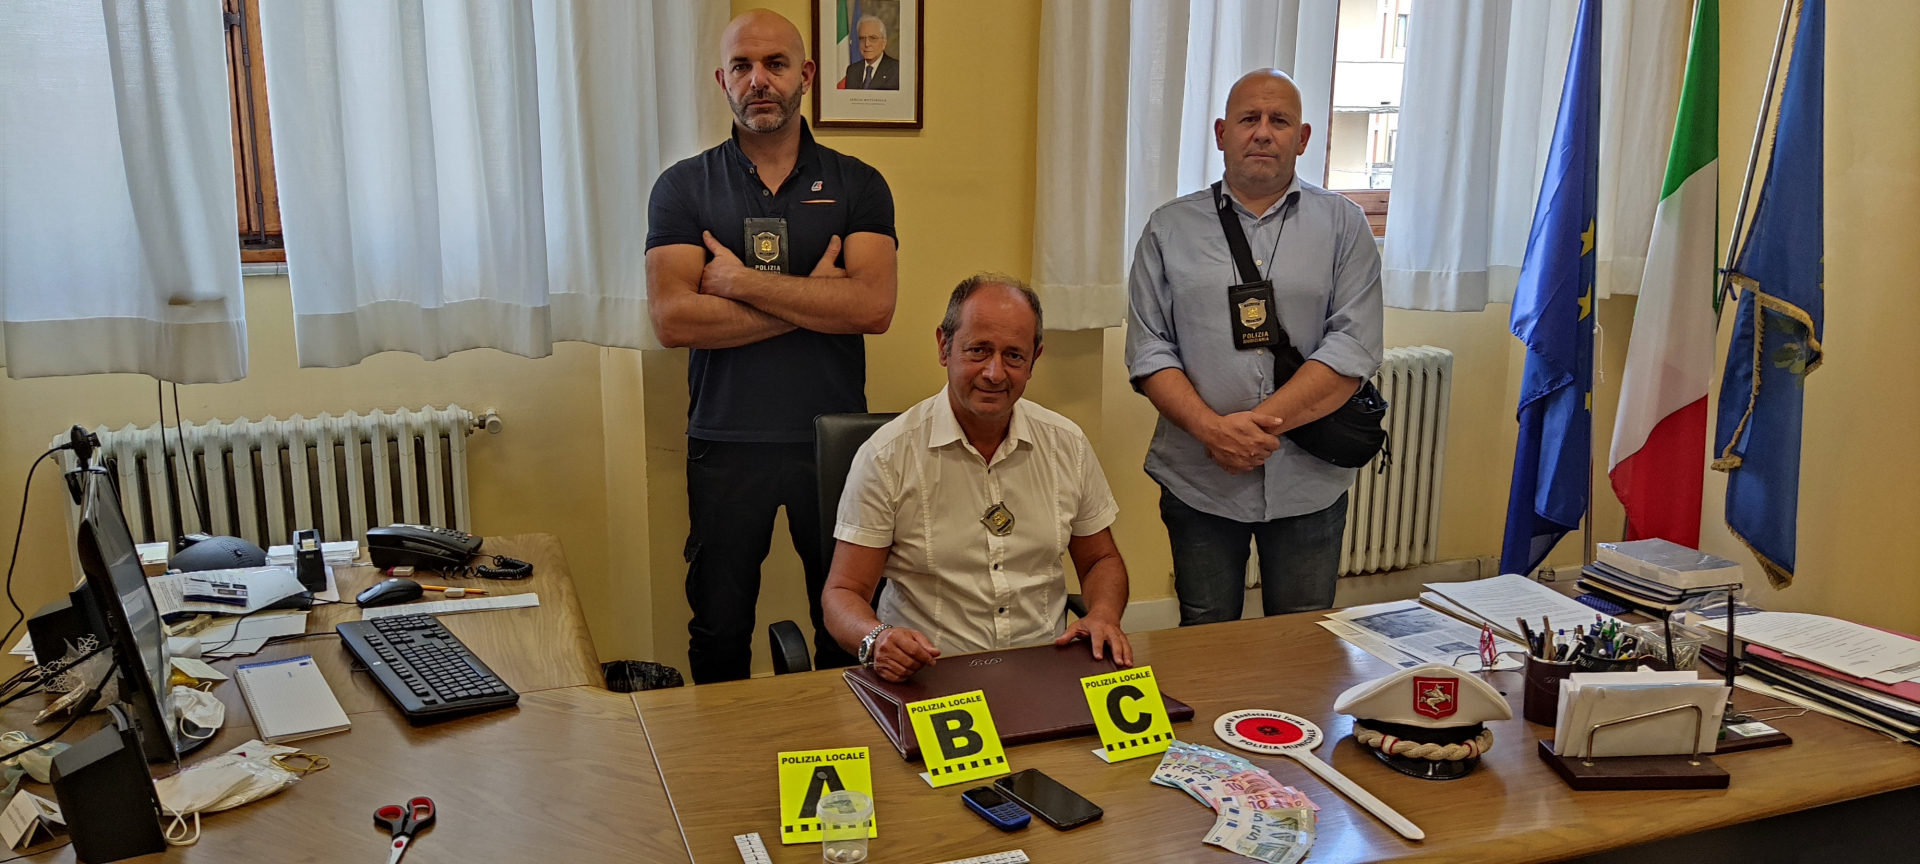 Cronaca, Montecatini: arrestato spacciatore